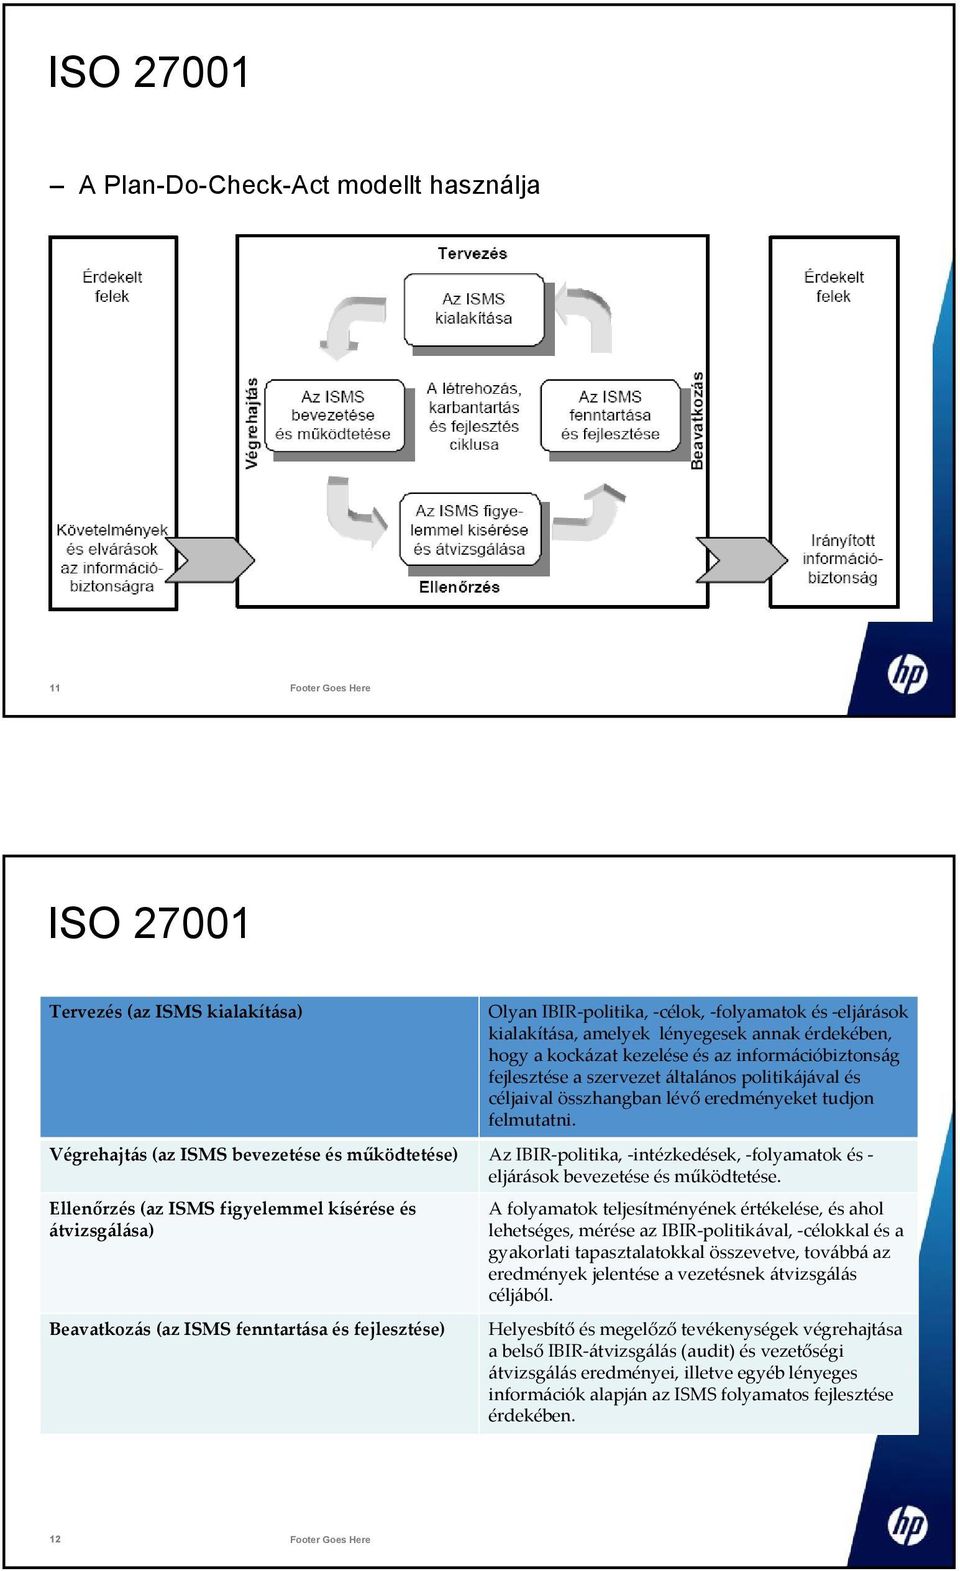 Végrehajtás (az ISMS bevezetése és működtetése) Az IBIR-politika, -intézkedések, -folyamatok és - eljárások bevezetése és működtetése.